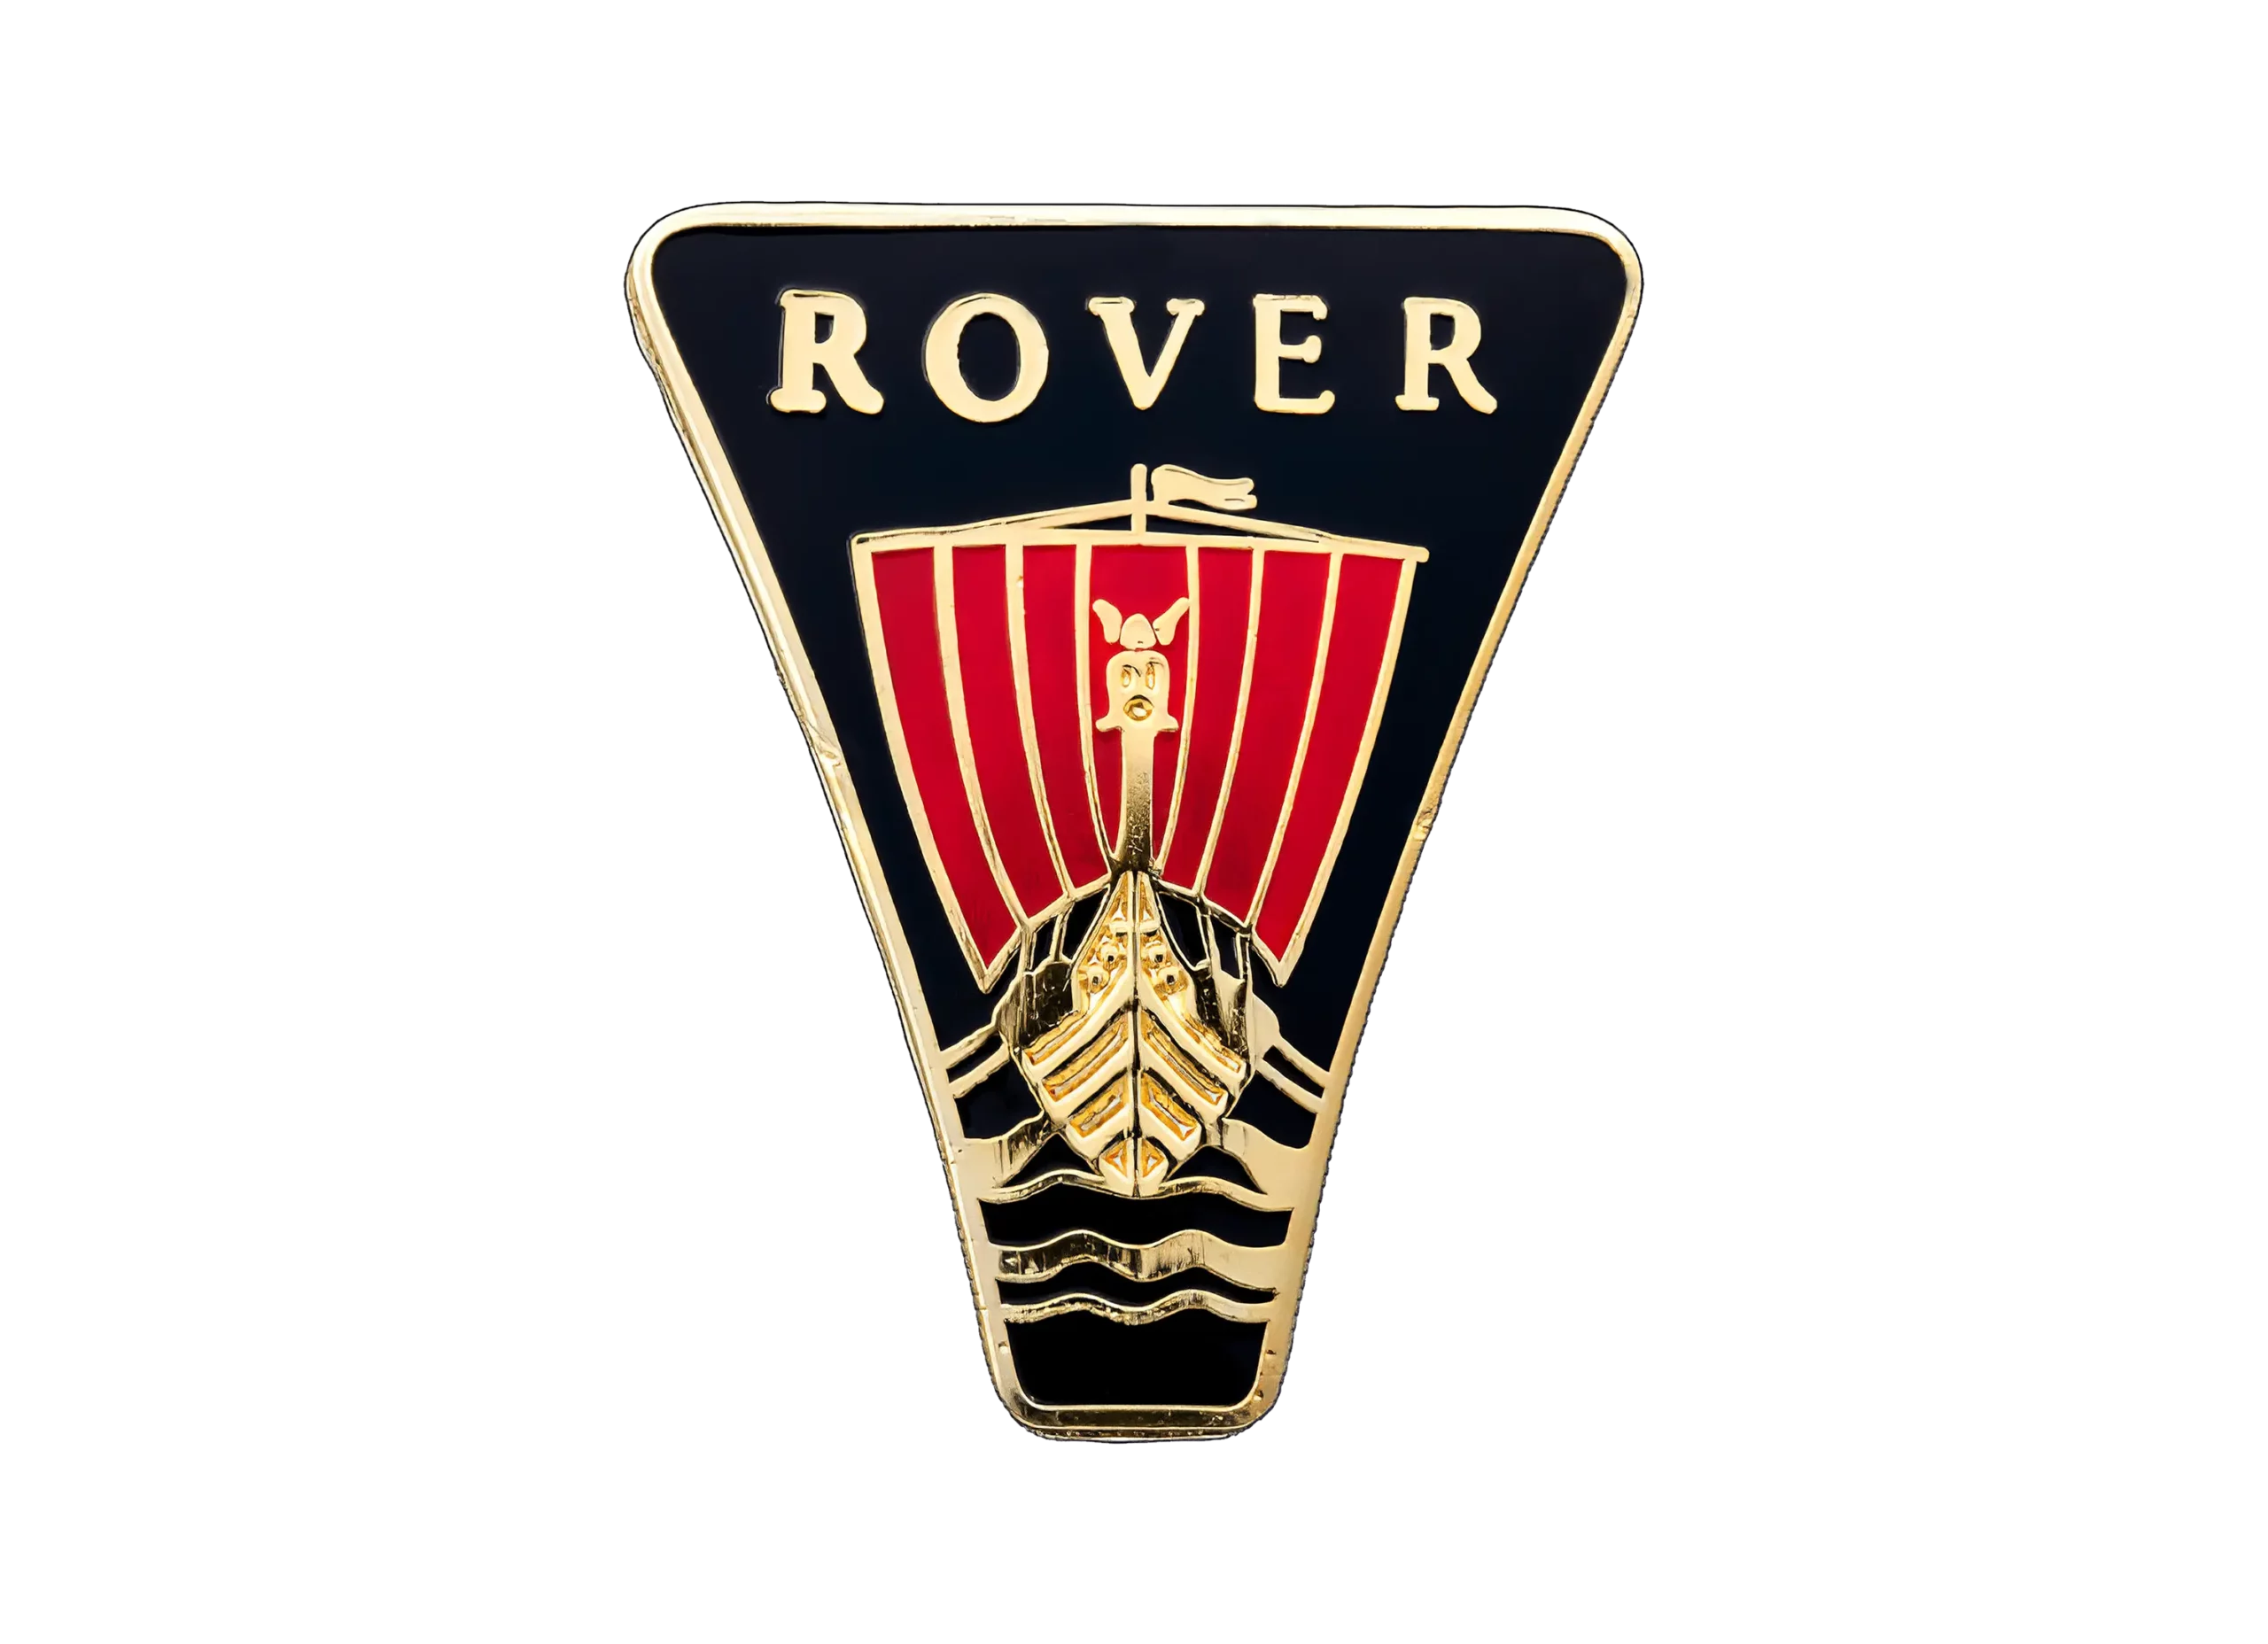 Rover logo 1963-1965